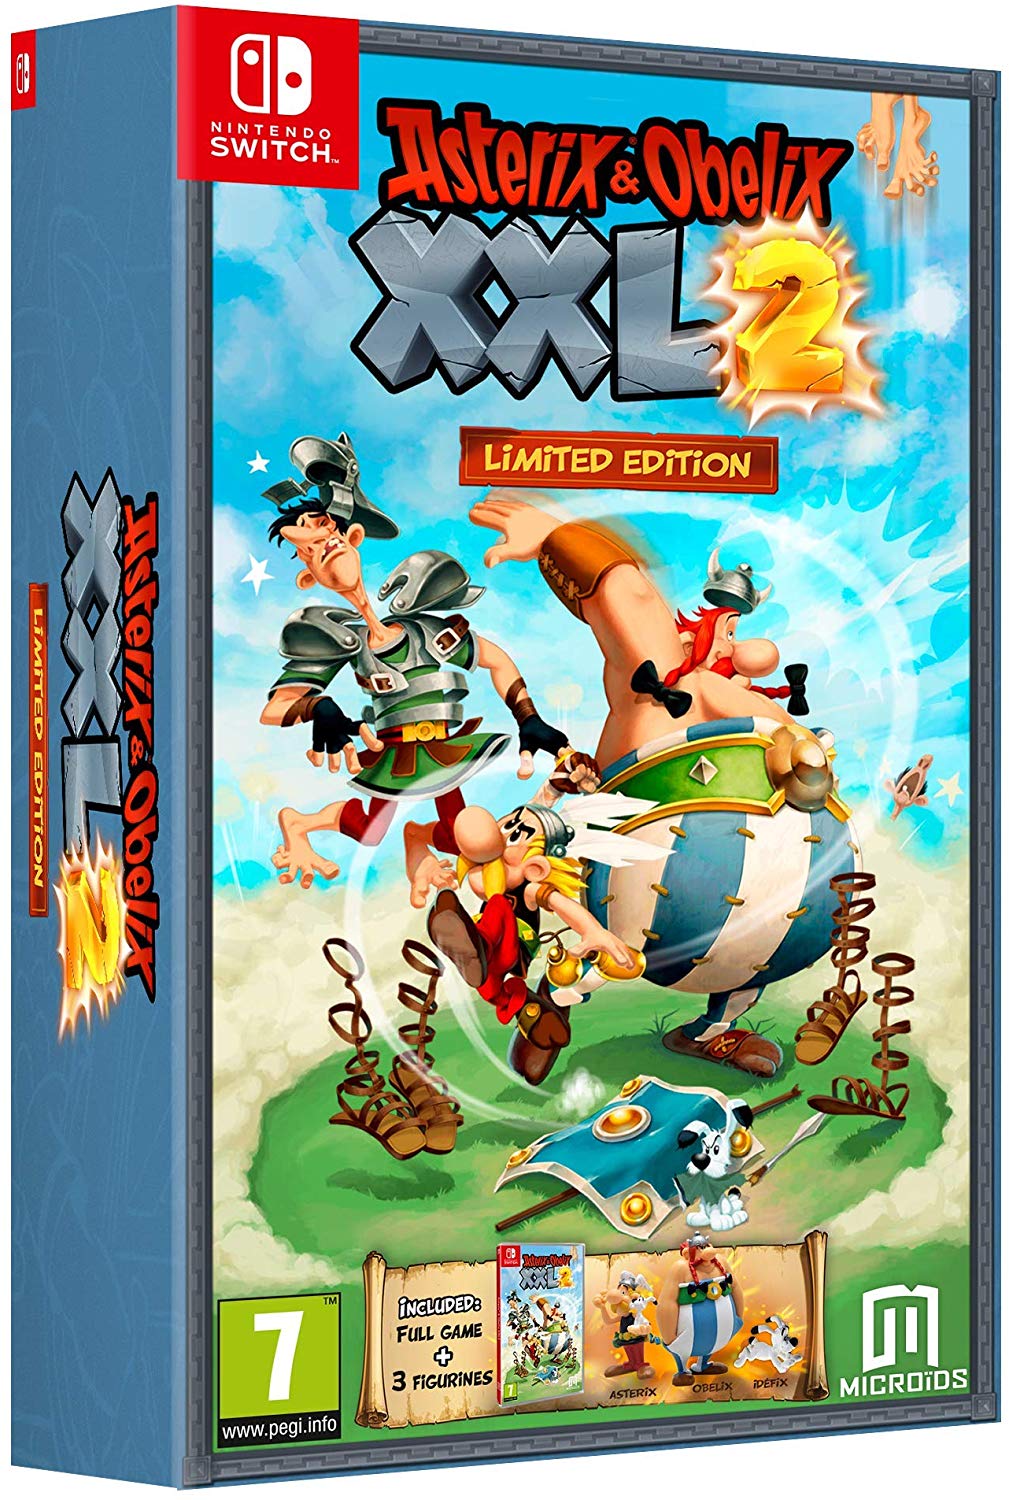 Asterix & Obelix XXL 2 Limited Edition - Nintendo Switch Játékok